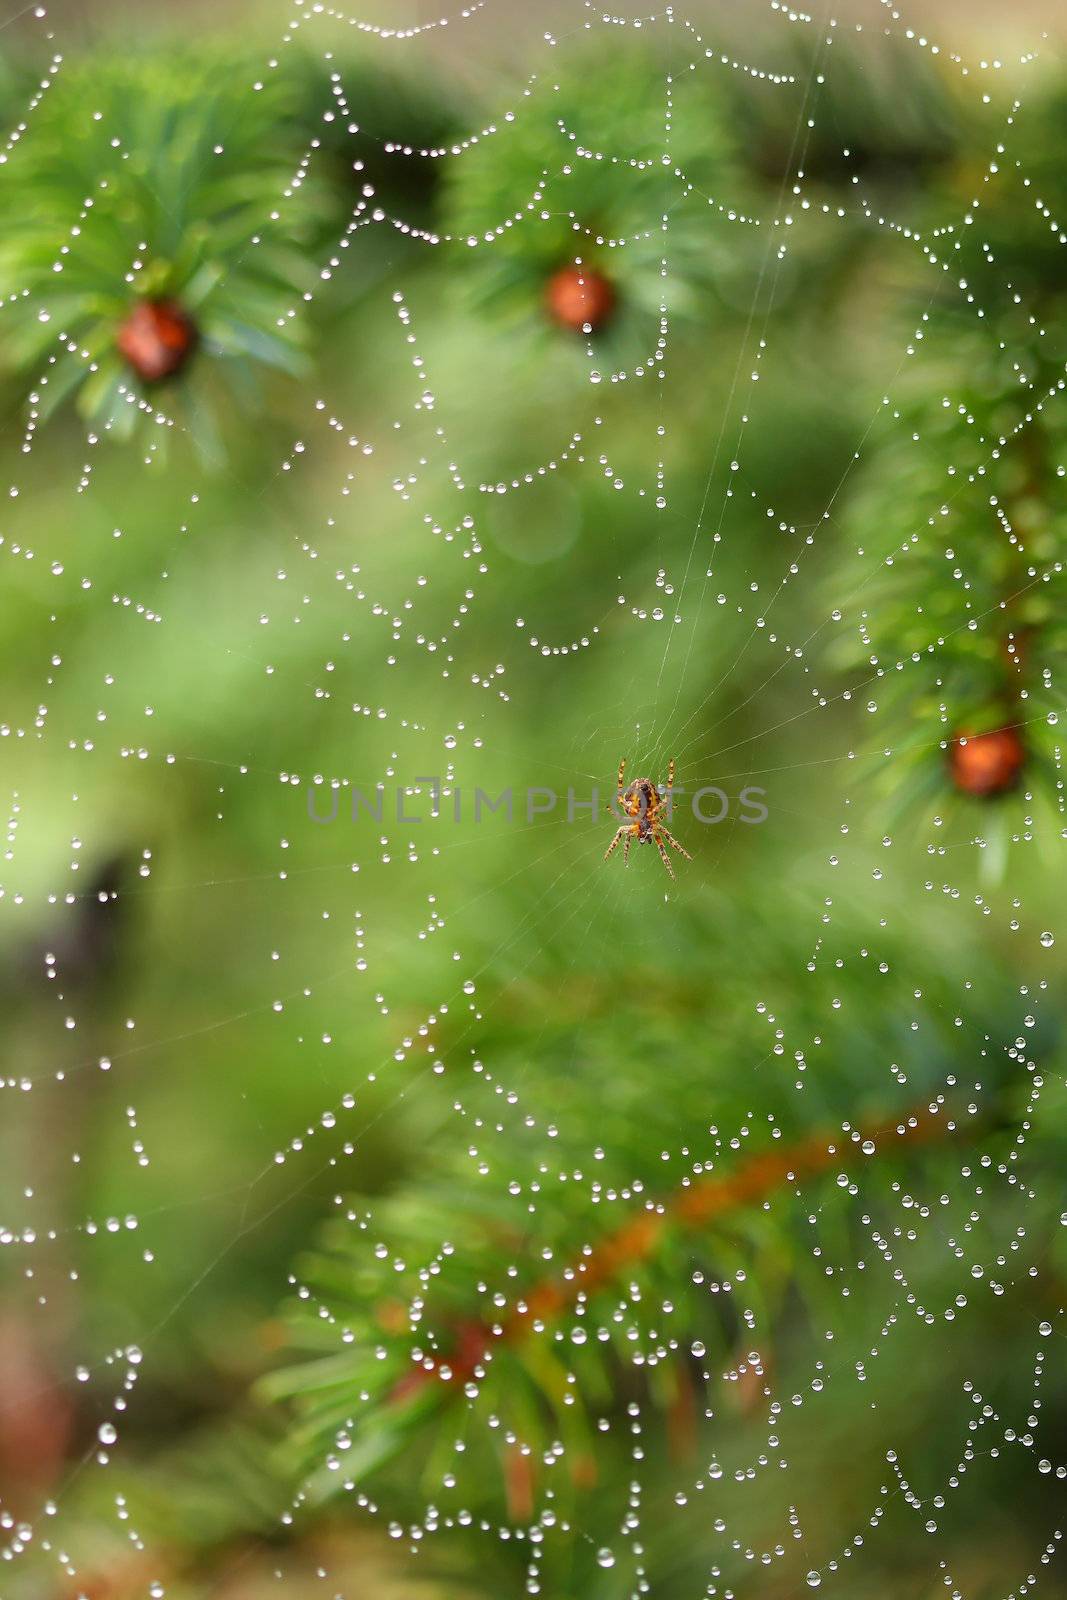 spiderweb by sumos